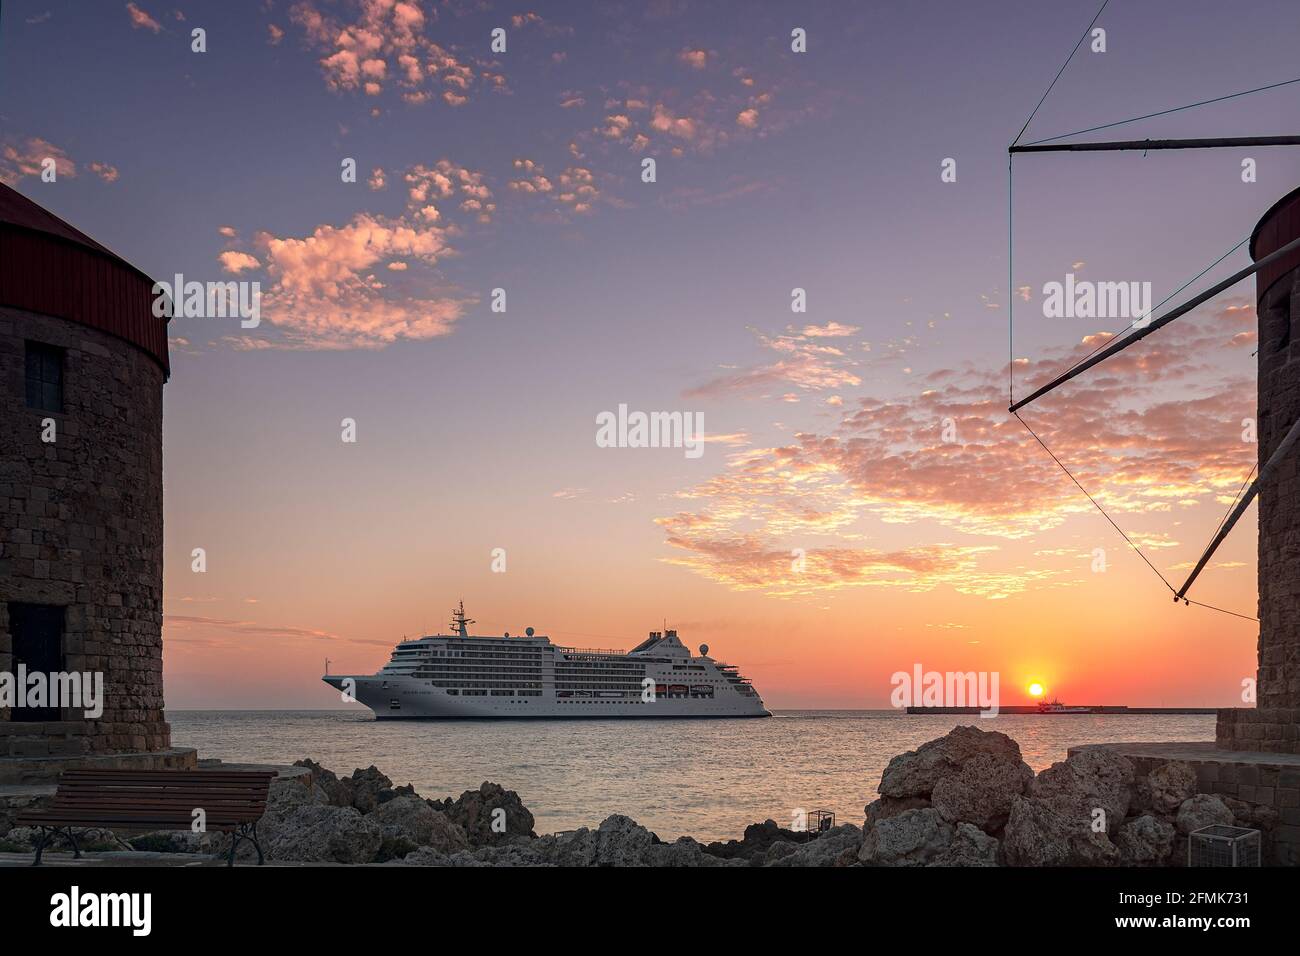 RHODES, GRECIA - 06 DE OCTUBRE de 2018: El barco crucero de lujo muse de plata se prepara para atracar en el puerto de la ciudad de rodas al amanecer. Foto de stock